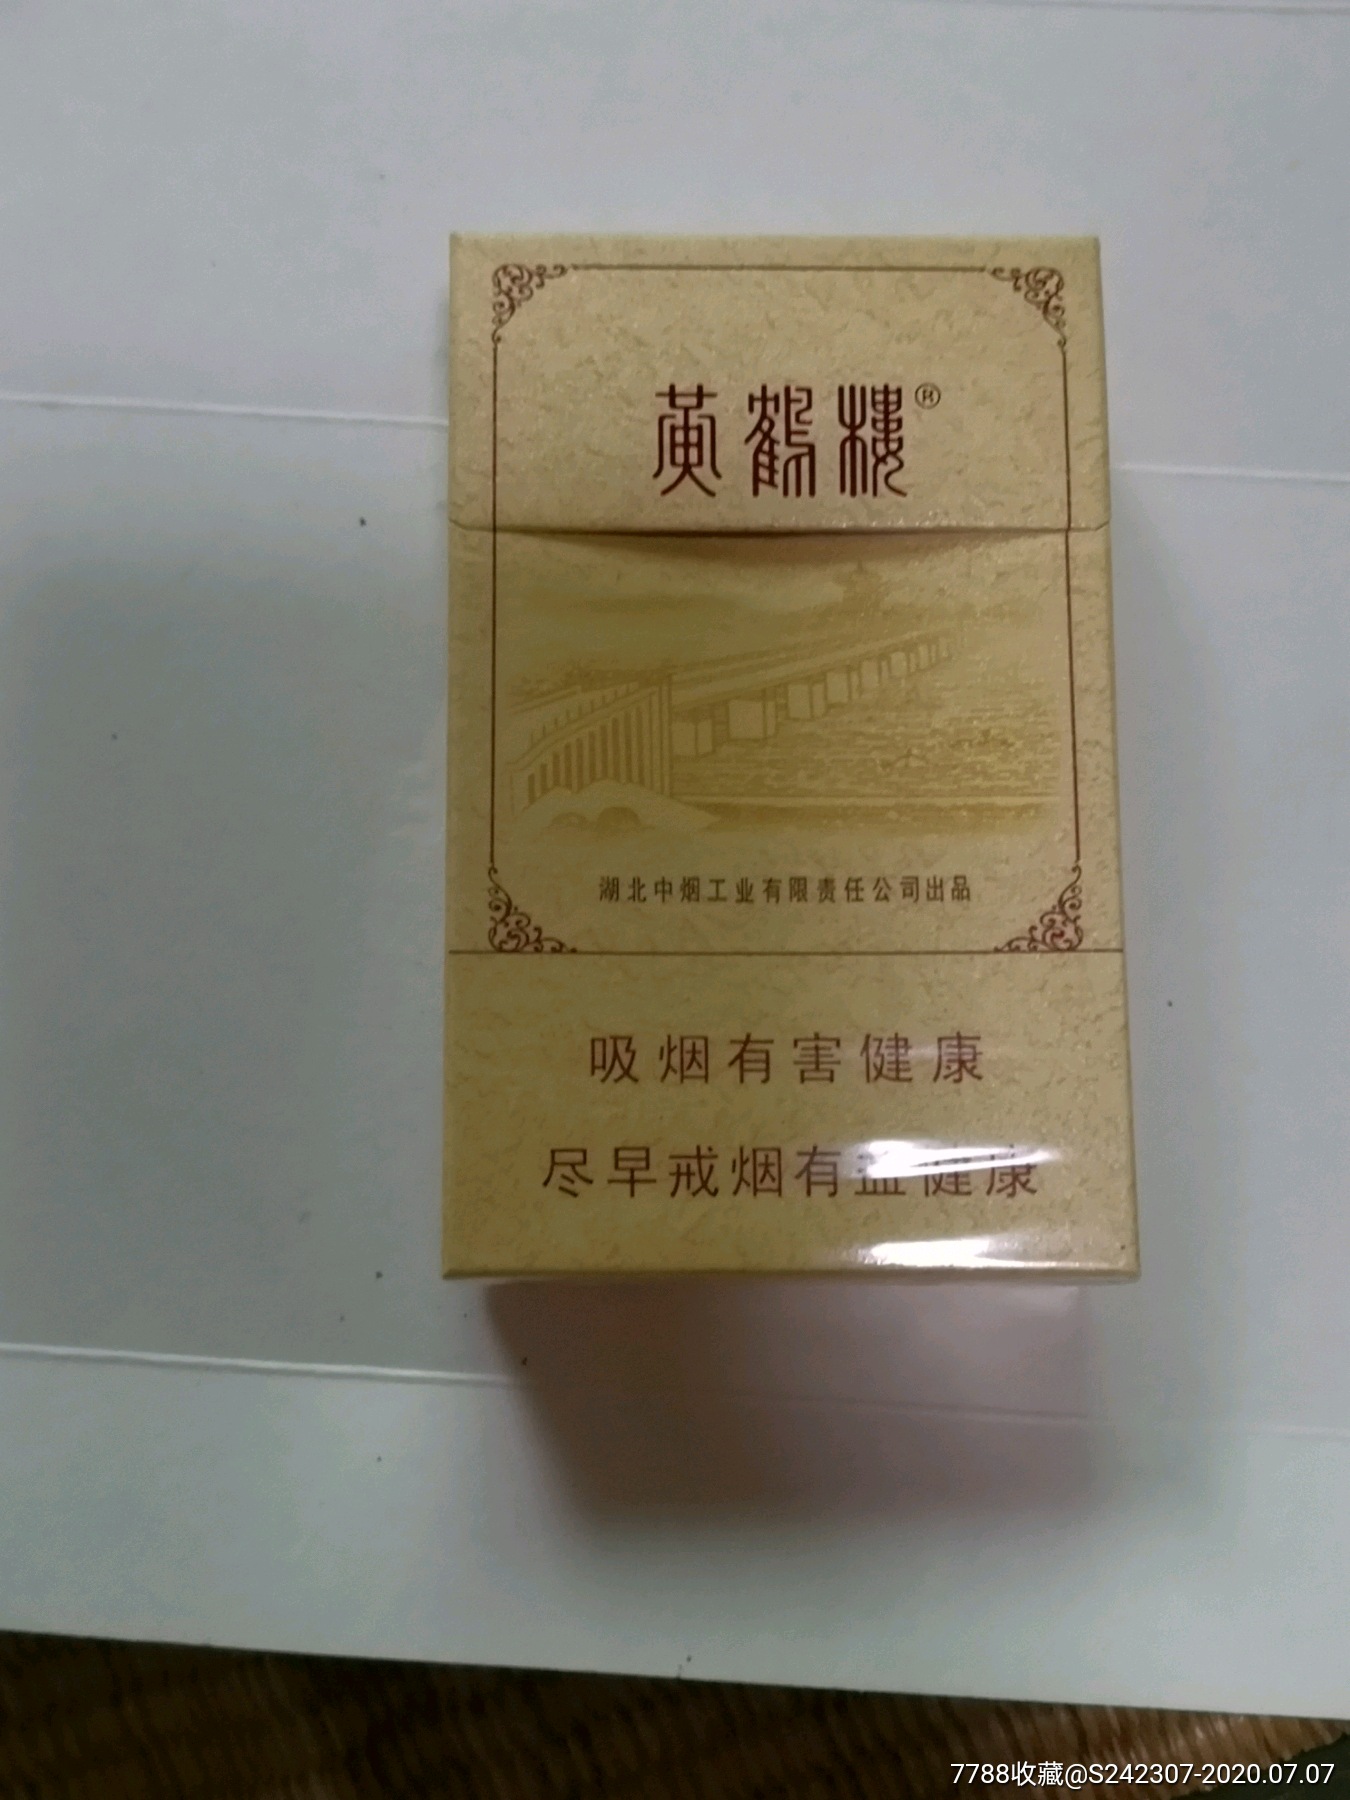 黄鹤楼棕色烟盒图片